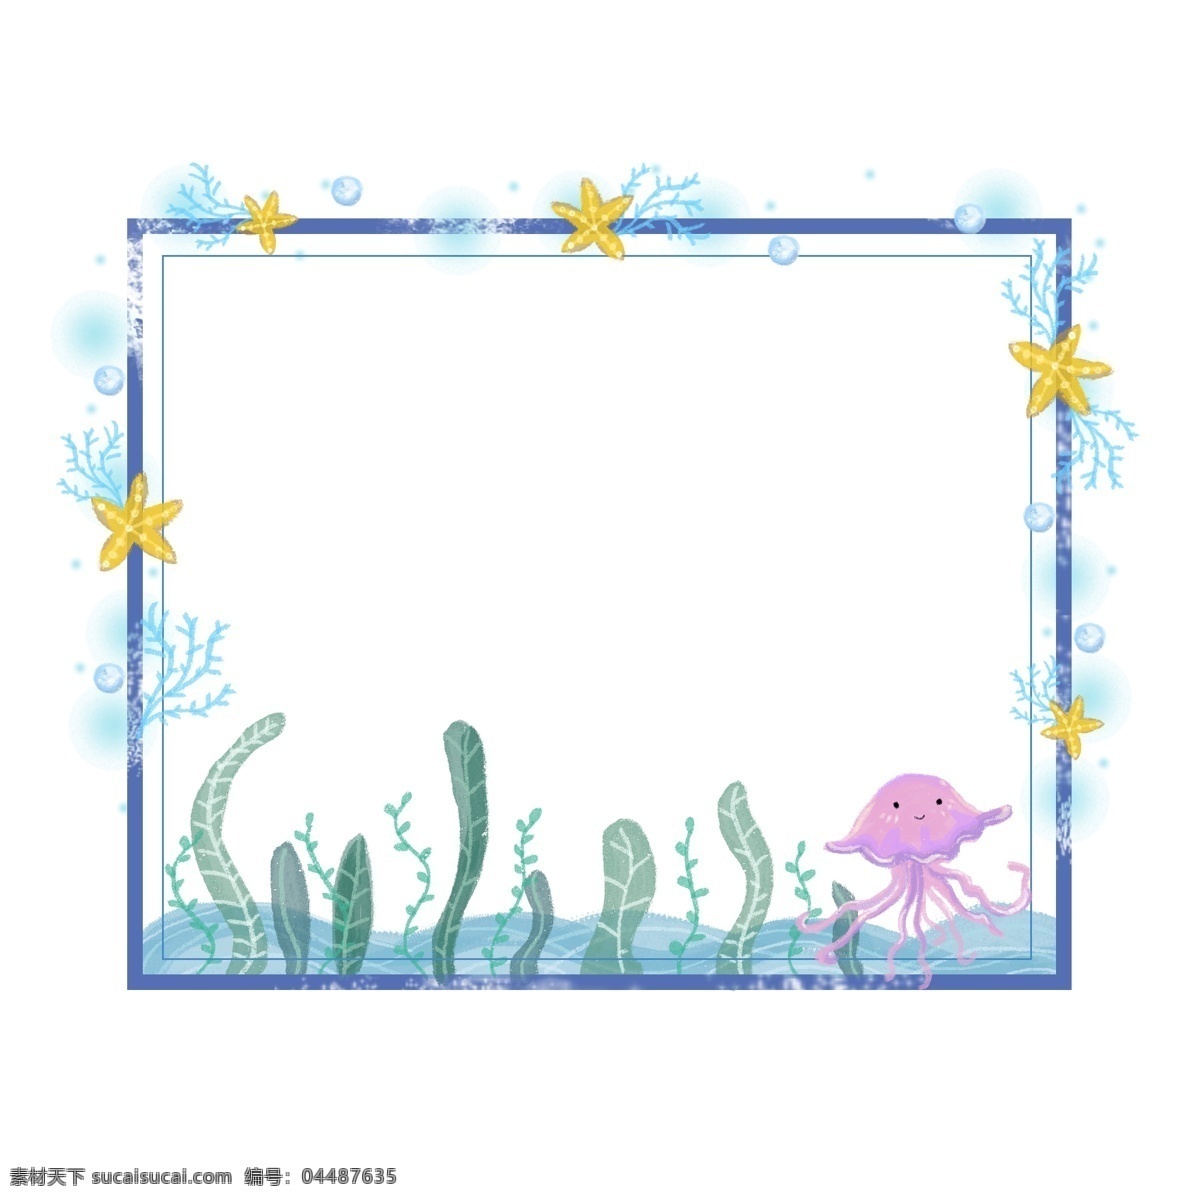 卡通 动物 手绘 水母 海洋 森 系 水草 边框 唯美 森系 海星 珊瑚